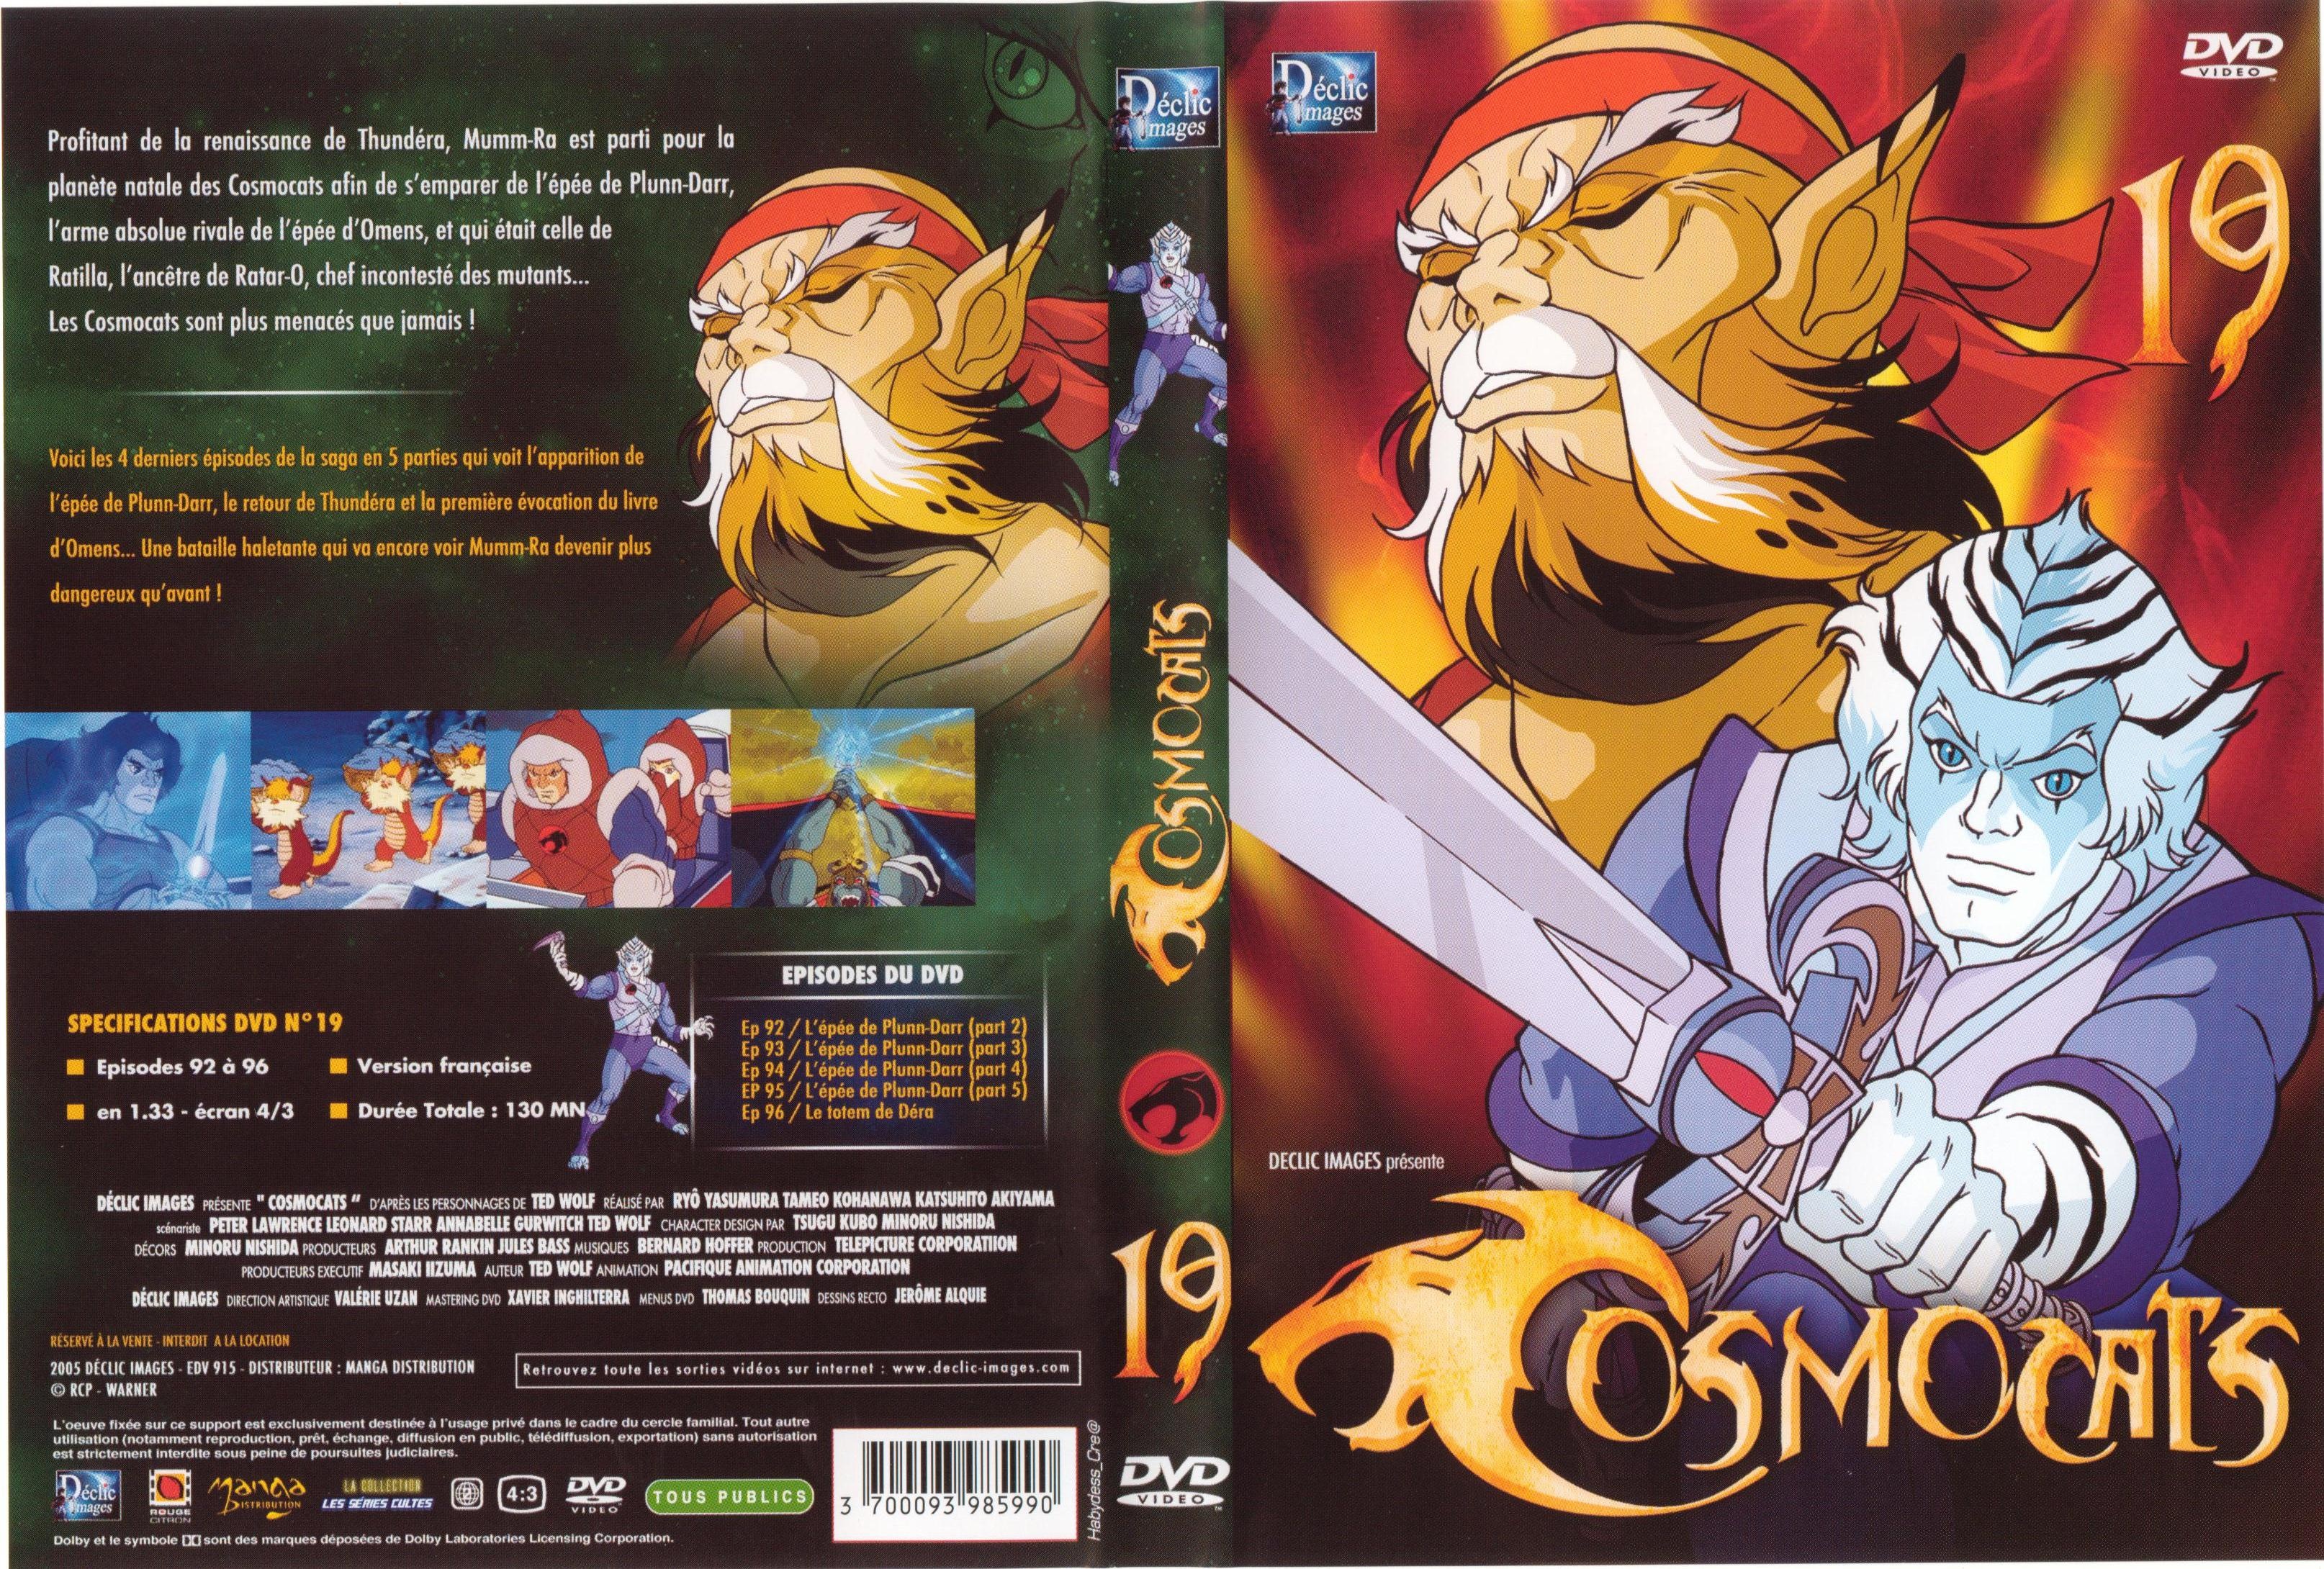 Jaquette DVD Cosmocats vol 19